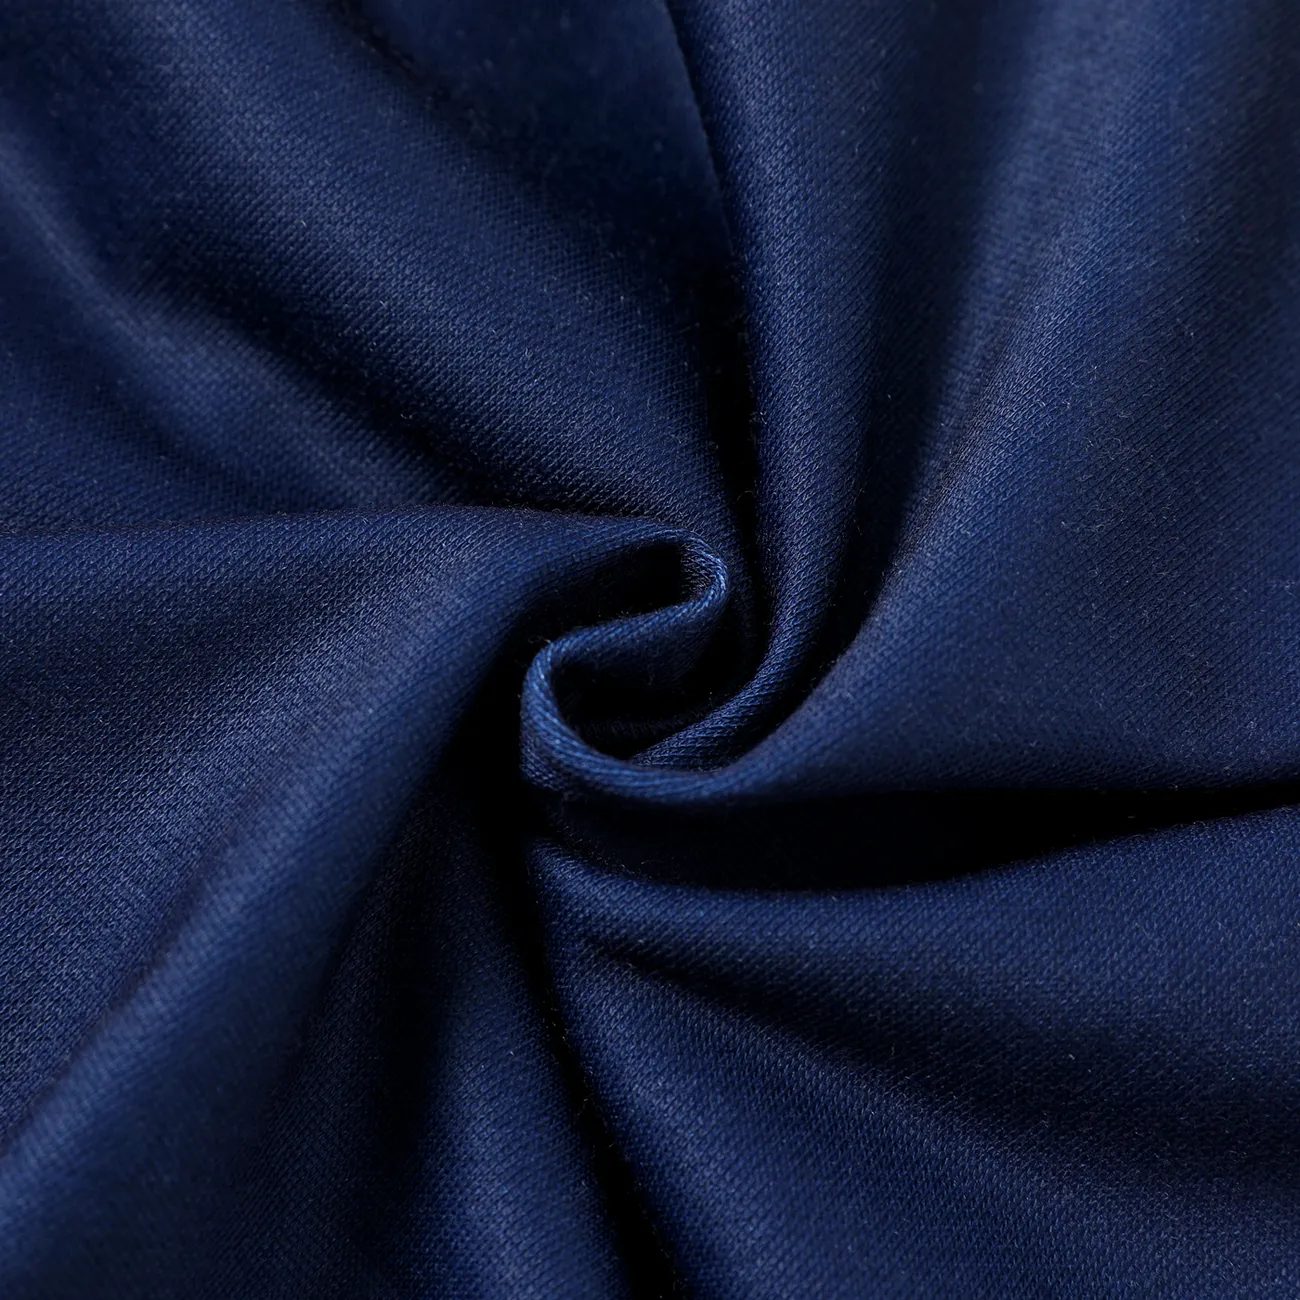 Enfants Garçon Couture de tissus Lettre Manteau / Veste Bleu Foncé big image 1